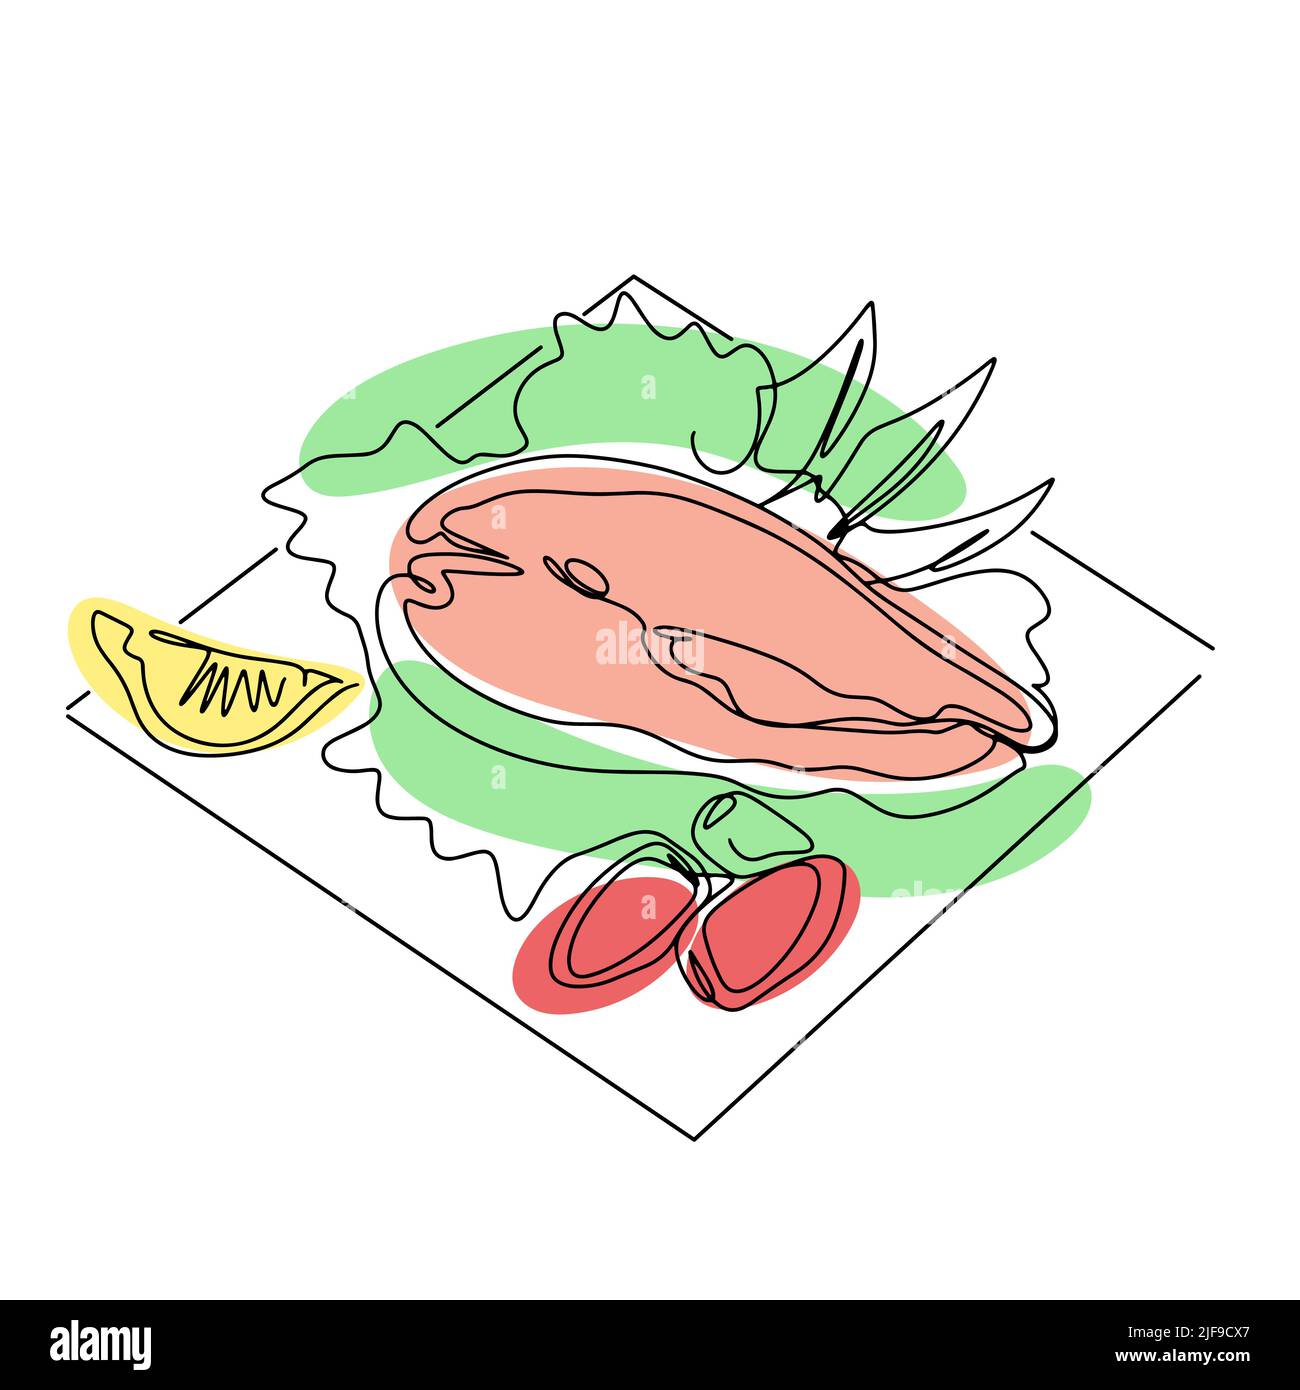 Gericht Lachs mit Salat Zitrone und Tomaten Linie Art Vektor. Gekochte Speisen, Meeresfrüchte und isolierte einzeilige Illustration. Fischsteak mit roter Forelle und Garnierung Stock Vektor